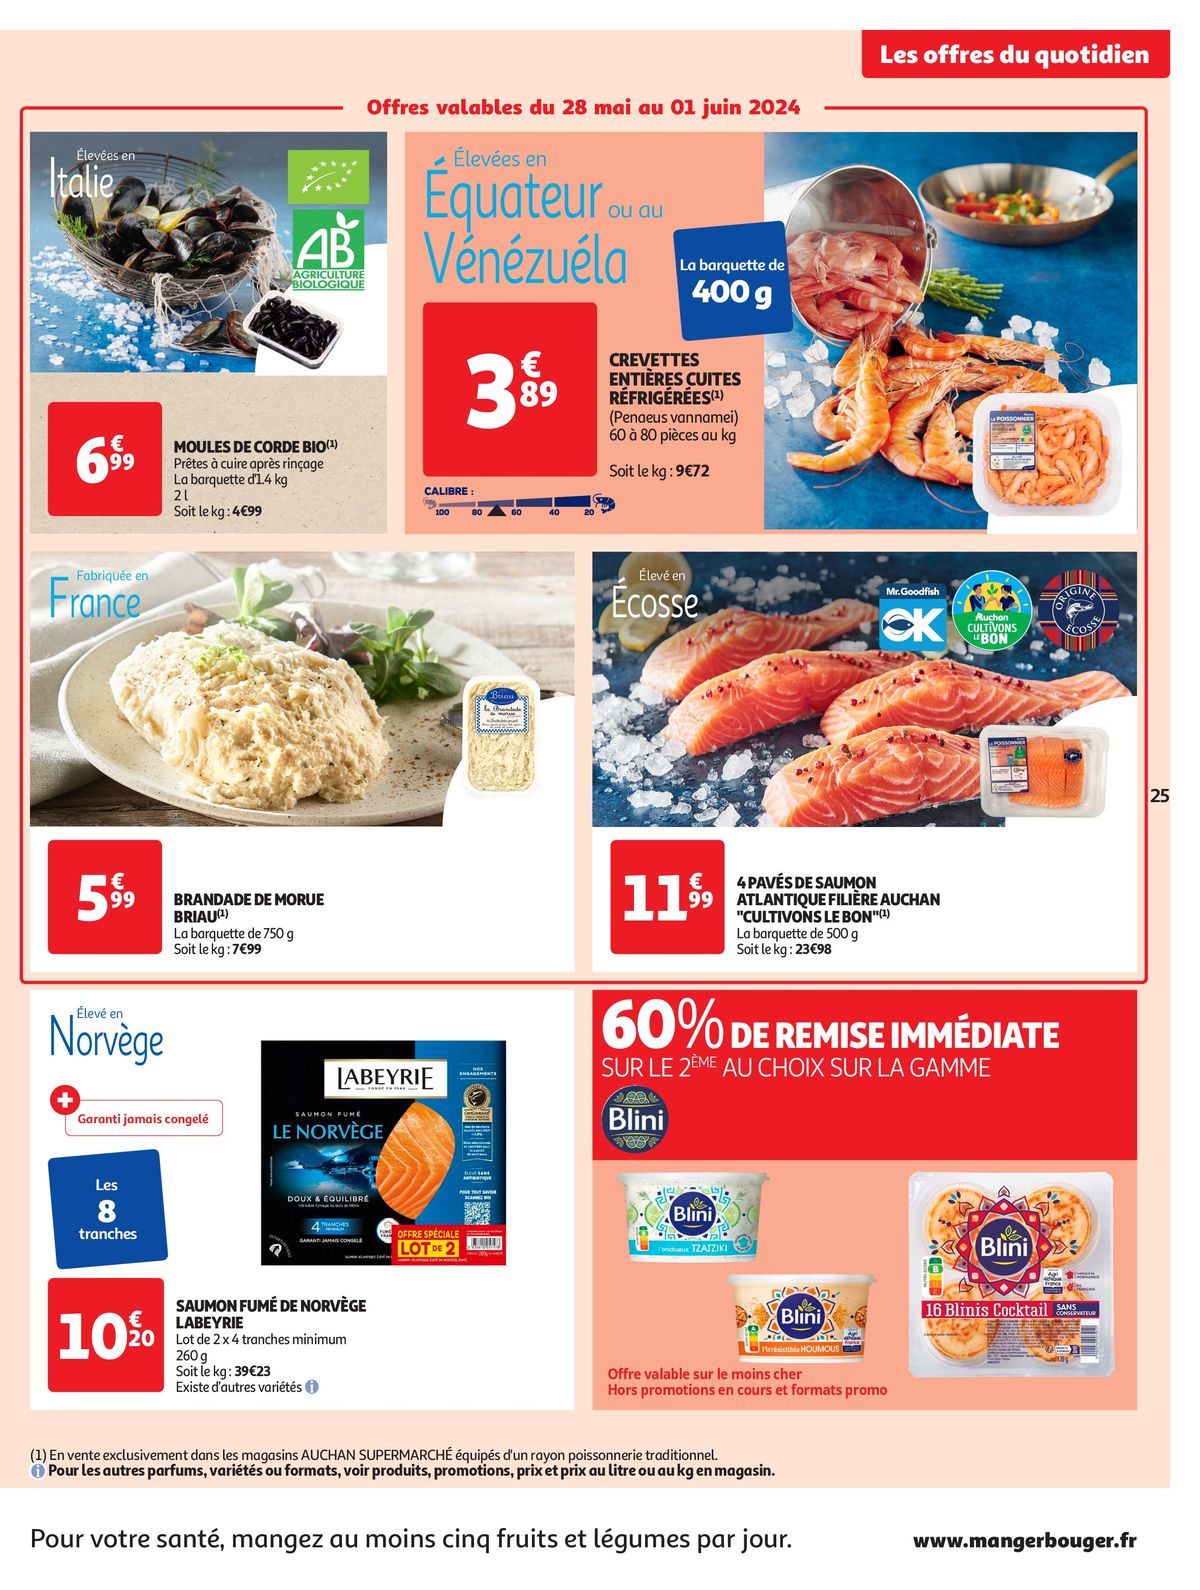 Catalogue Format XXL à prix XXS dans votre supermarché, page 00025